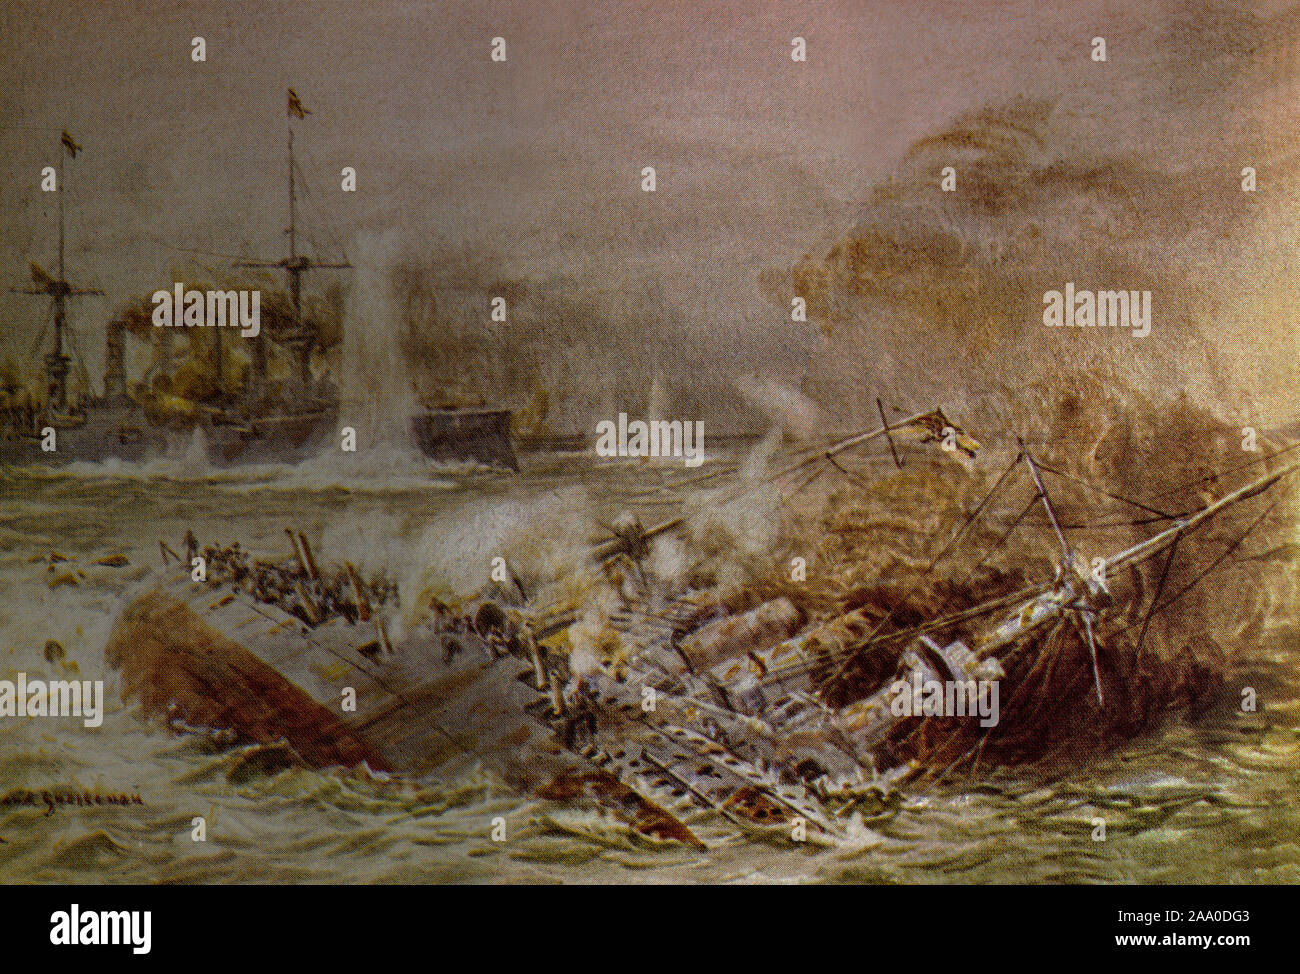 Ein Gemälde von William Lionel Wyllie zeigt das Ende der Scharnhorst ein Panzerkreuzer der deutschen Kaiserlichen Marine (Kaiserliche Marine). Es war versenkt und in Aktion gesunken, während ihre Schwester Schiff während der gneisenau weiter zu kämpfen. Schlacht von den Falkland Inseln, 8. Dezember 1914. Stockfoto